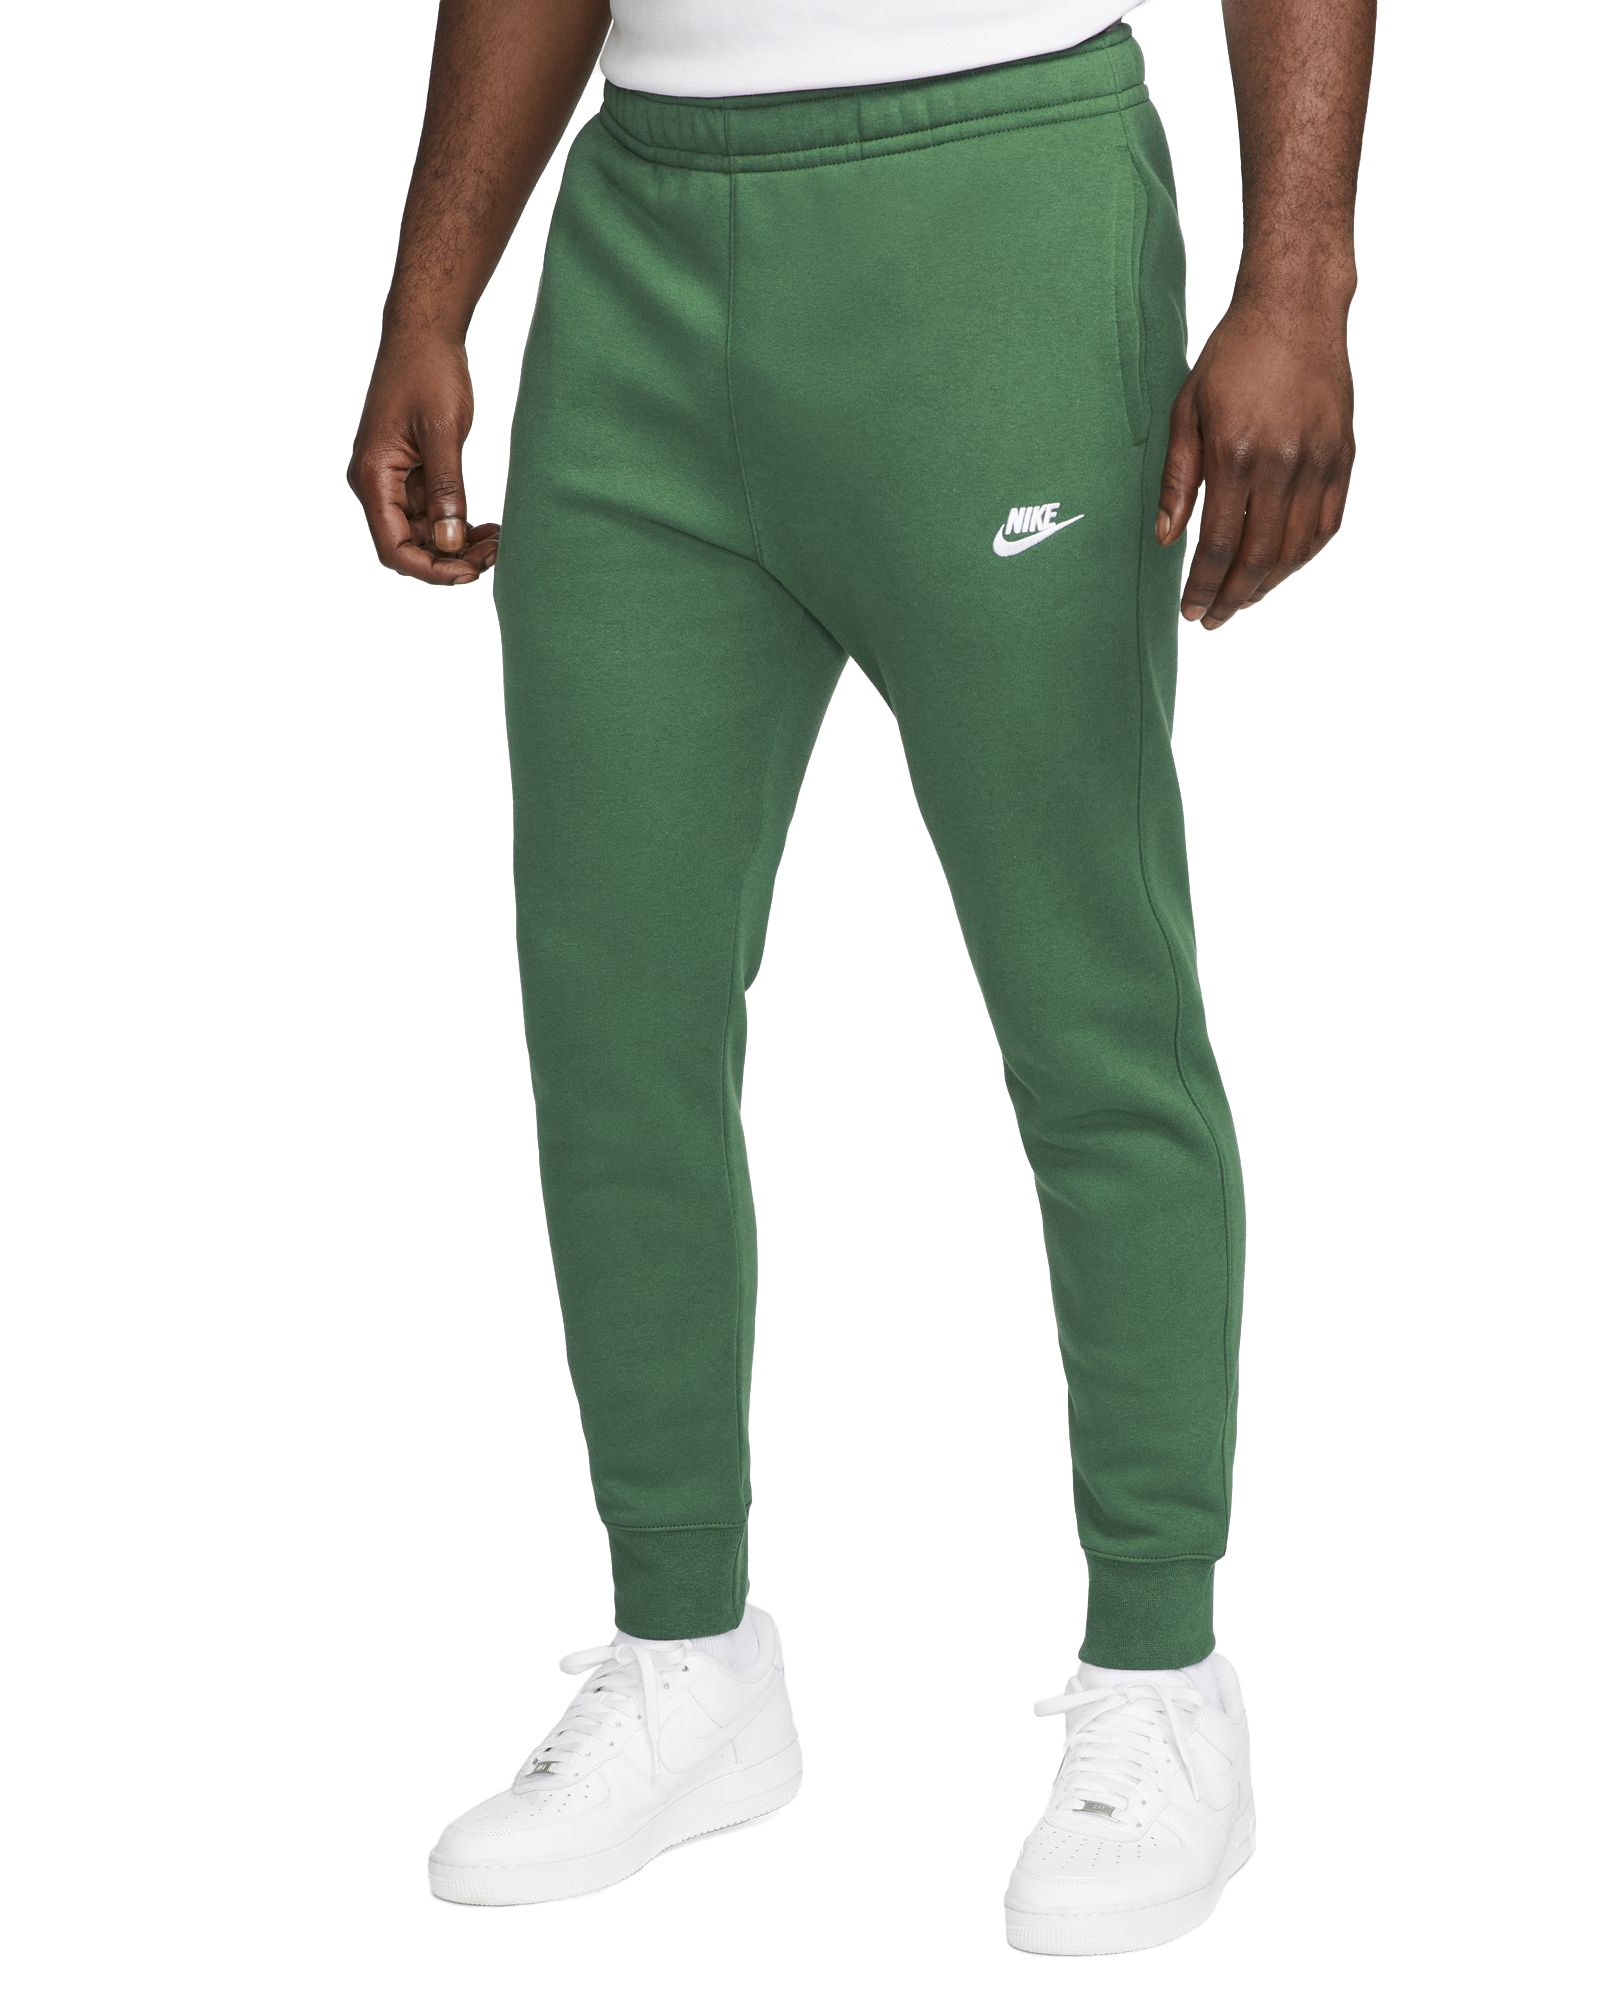 kloof oud Uitvoerbaar Nike Club Jogger Pant - Gorge Green/White - MODA3